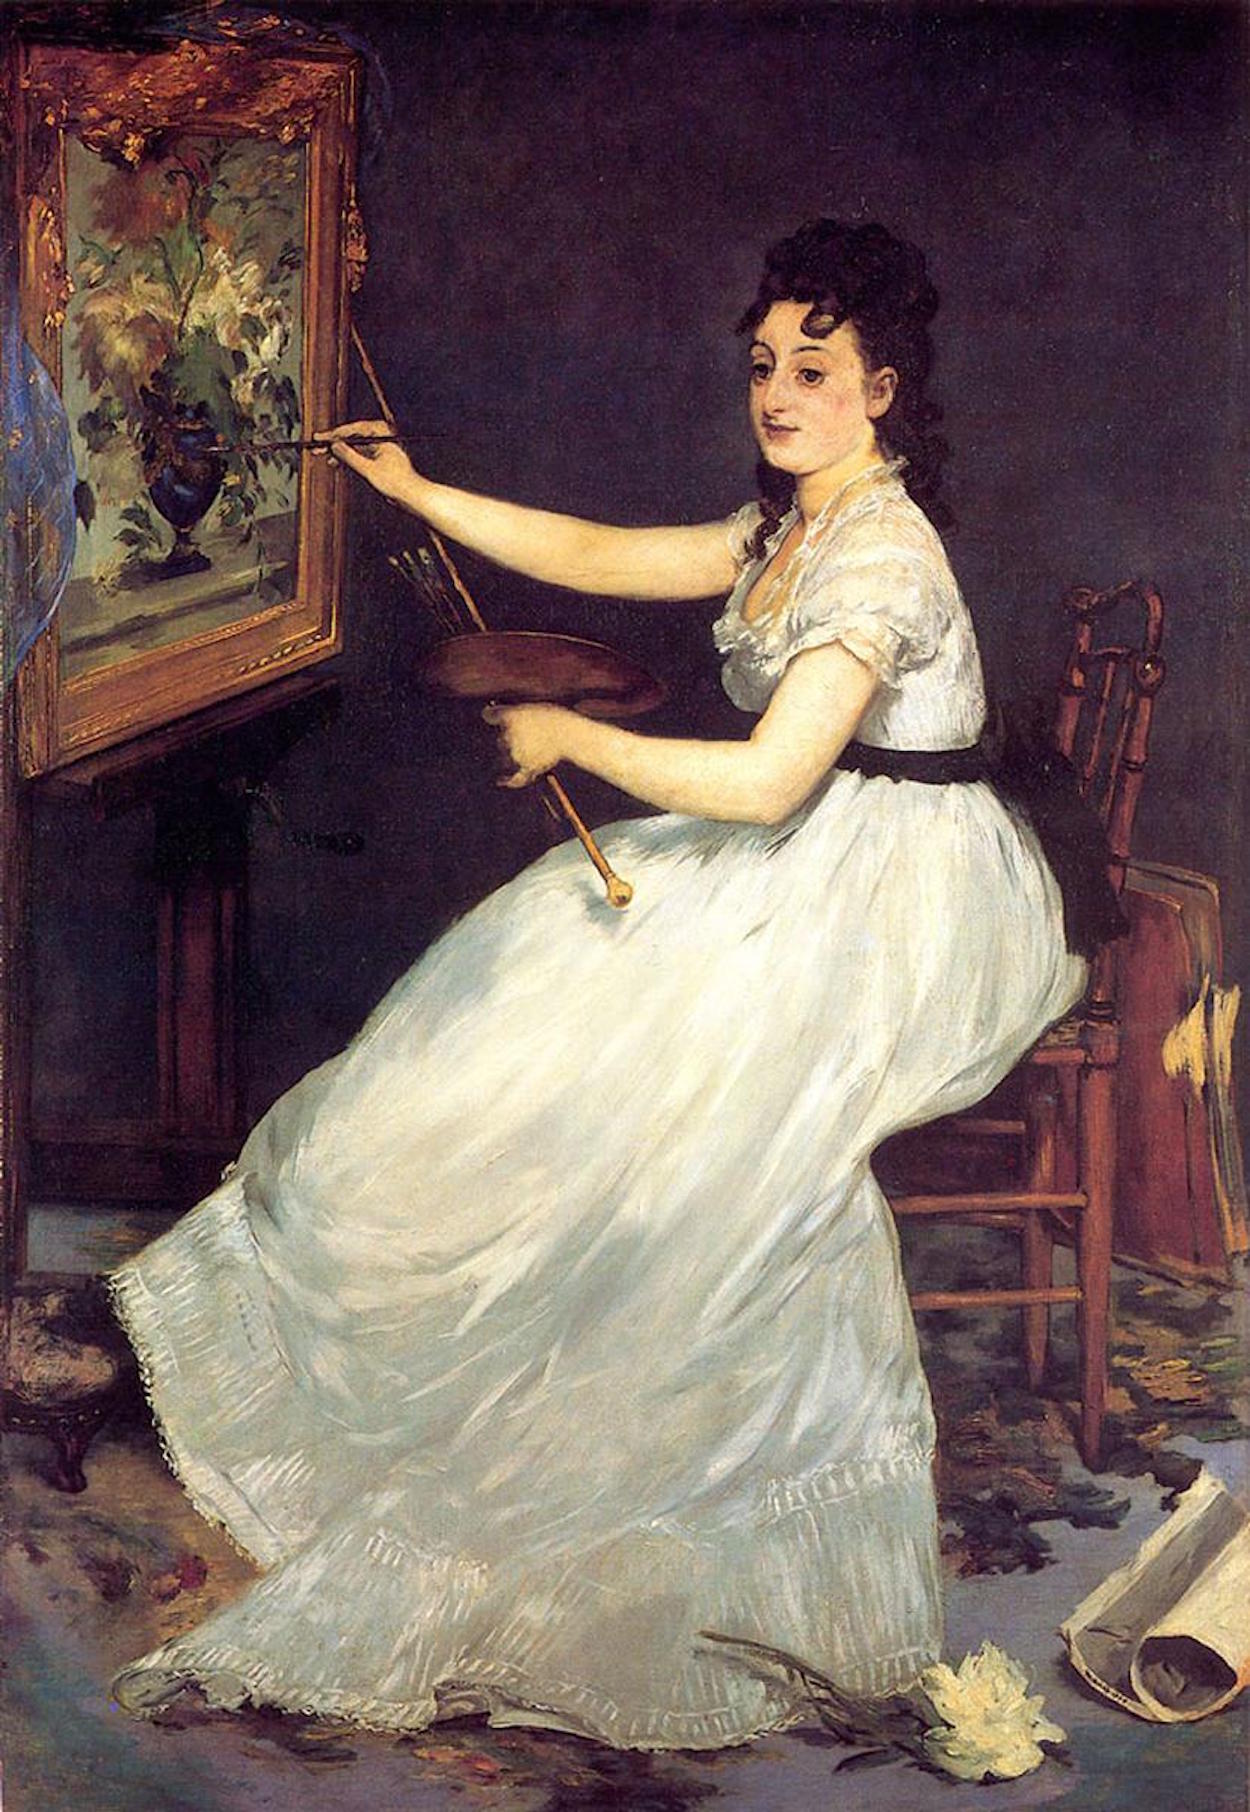 Eva Gonzalès - April 19, 1849 - May 6, 1883